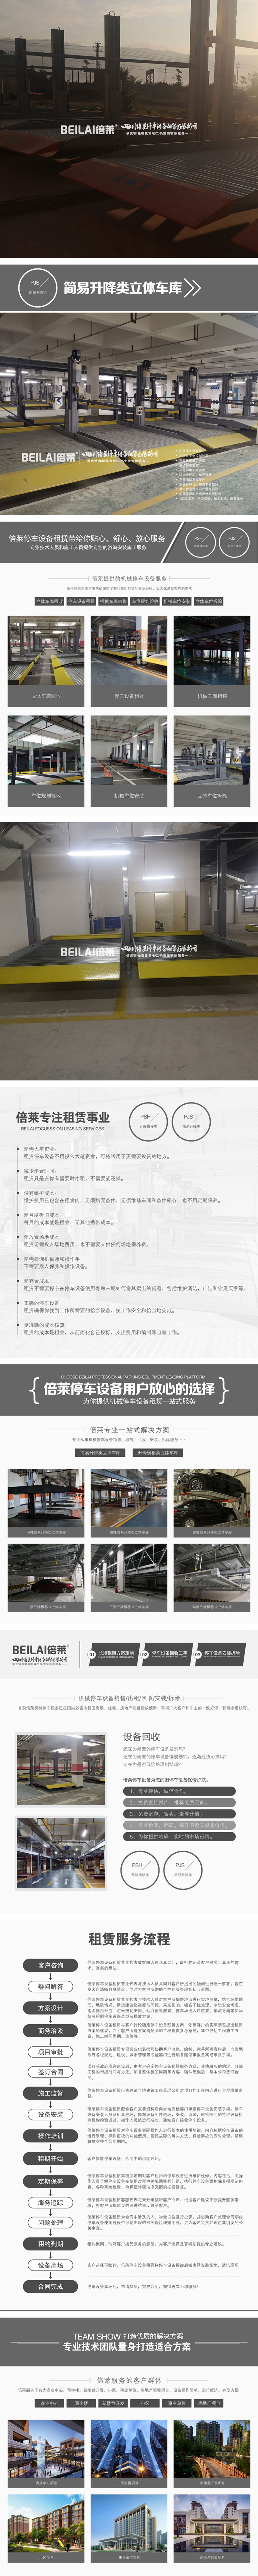 重庆市潼南立体车库载车板全自动设备,复式立体停车库租赁,倍莱二手立体车位服务出租